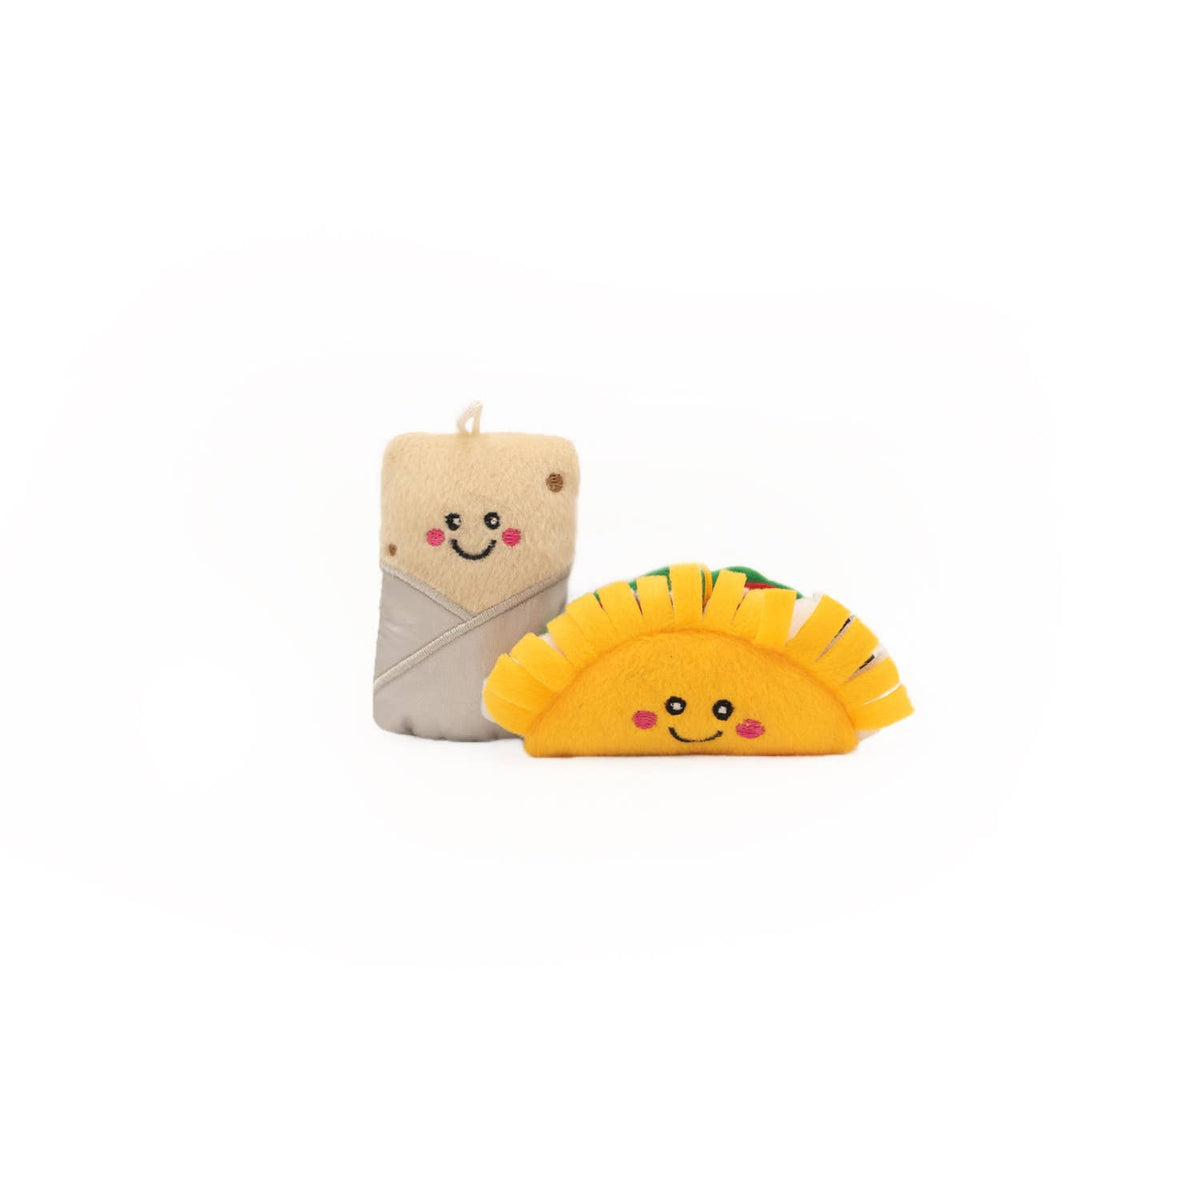 Taco and Burrito cat toy